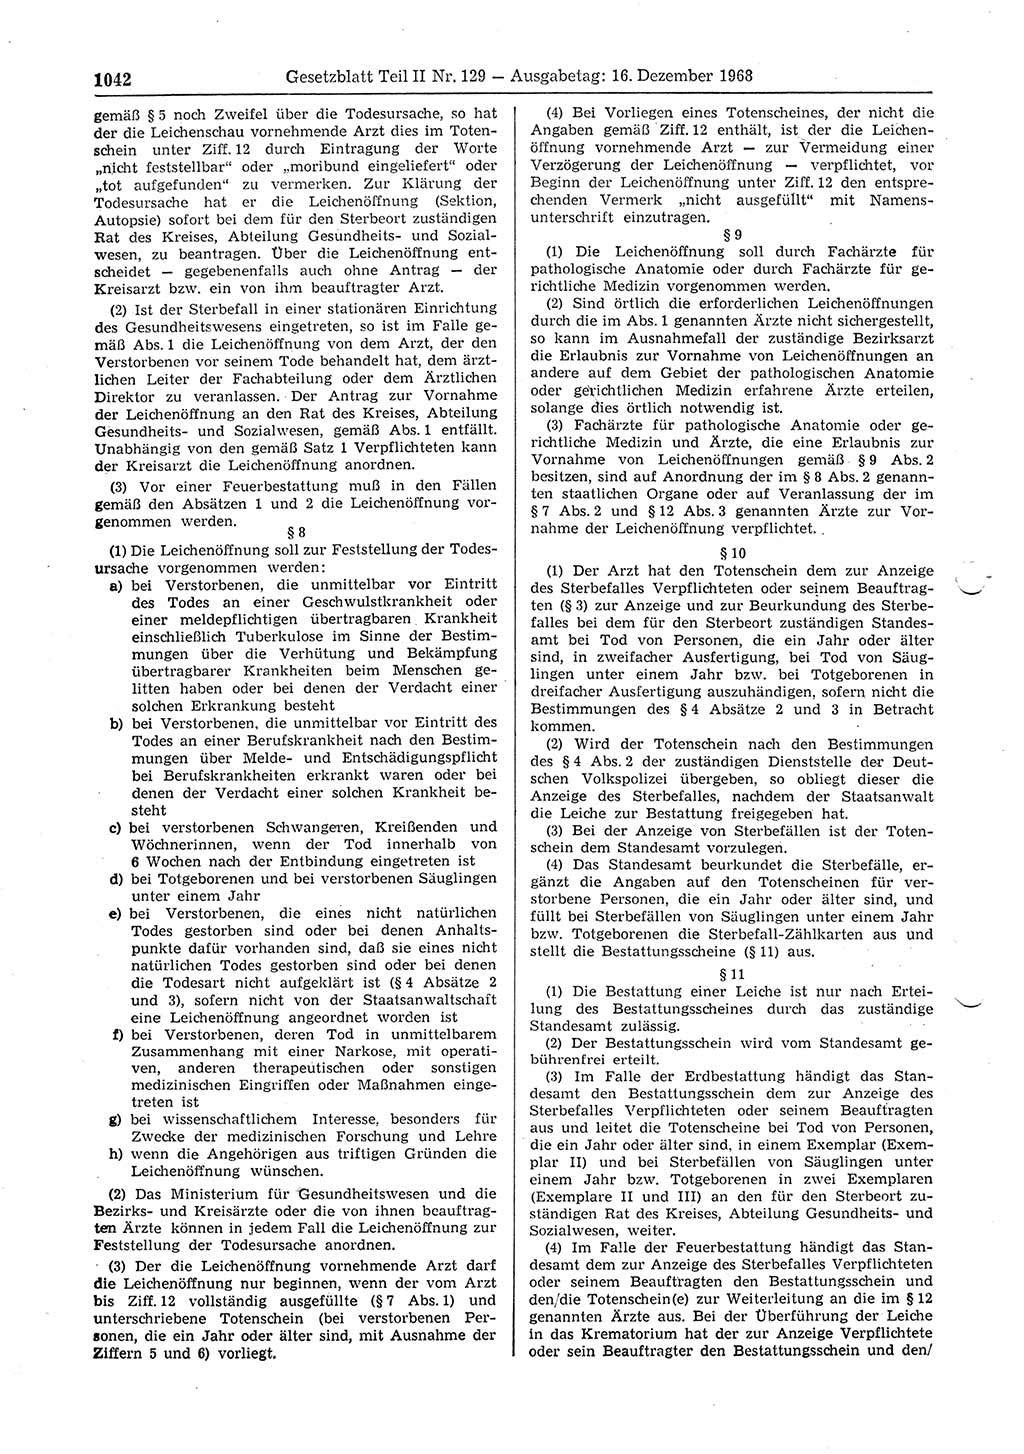 Gesetzblatt (GBl.) der Deutschen Demokratischen Republik (DDR) Teil ⅠⅠ 1968, Seite 1042 (GBl. DDR ⅠⅠ 1968, S. 1042)